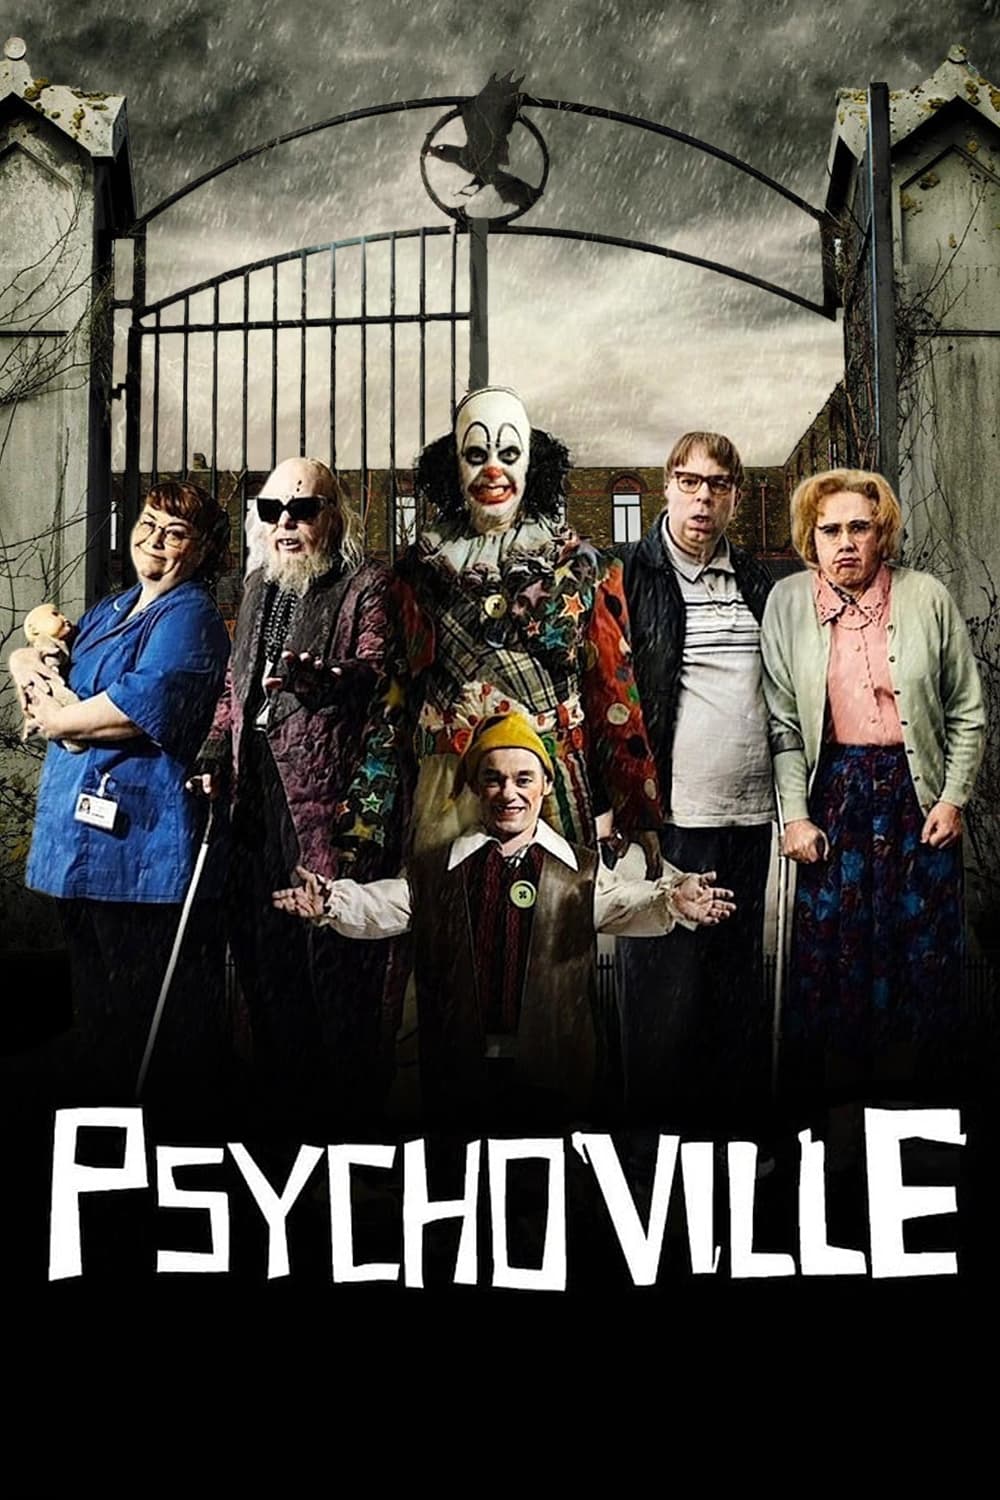 Psychoville (2009)